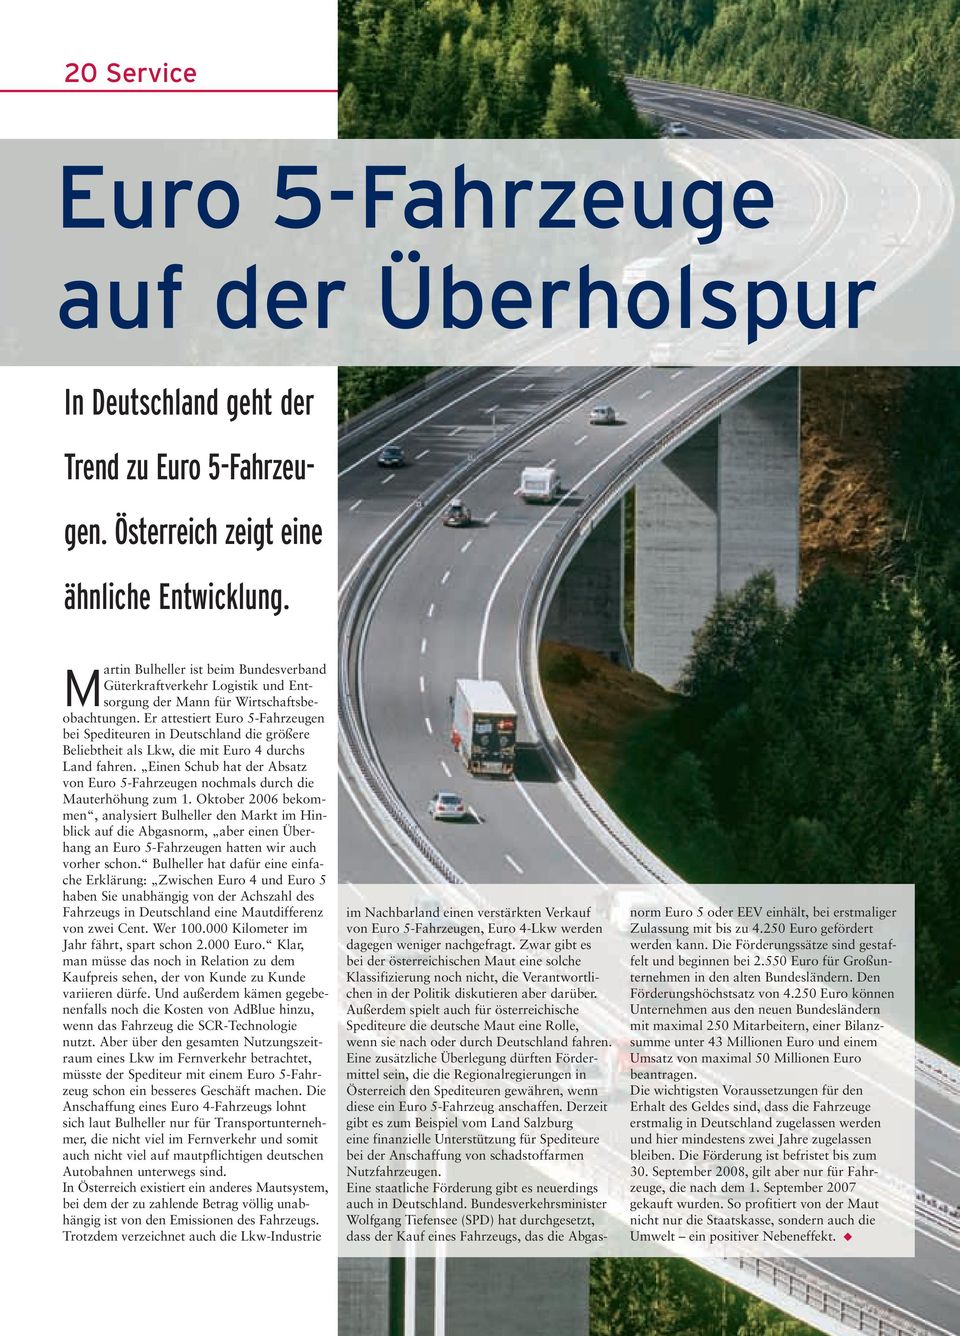 Er attestiert Euro 5-Fahrzeugen bei Spediteuren in Deutschland die größere Beliebtheit als Lkw, die mit Euro 4 durchs Land fahren.